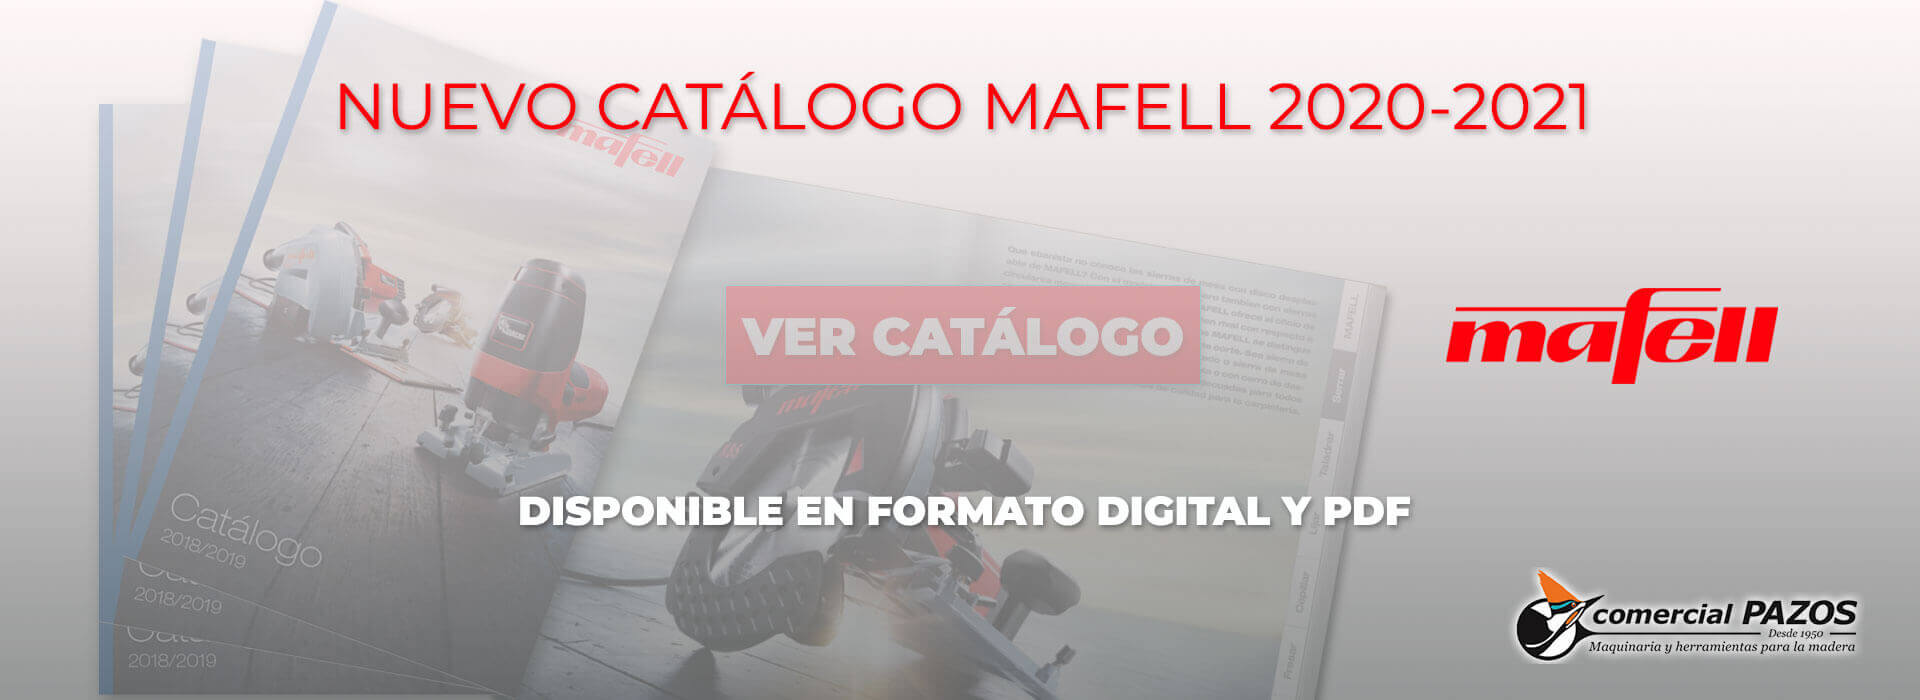 Catálogo Mafell 2020-2021 ES